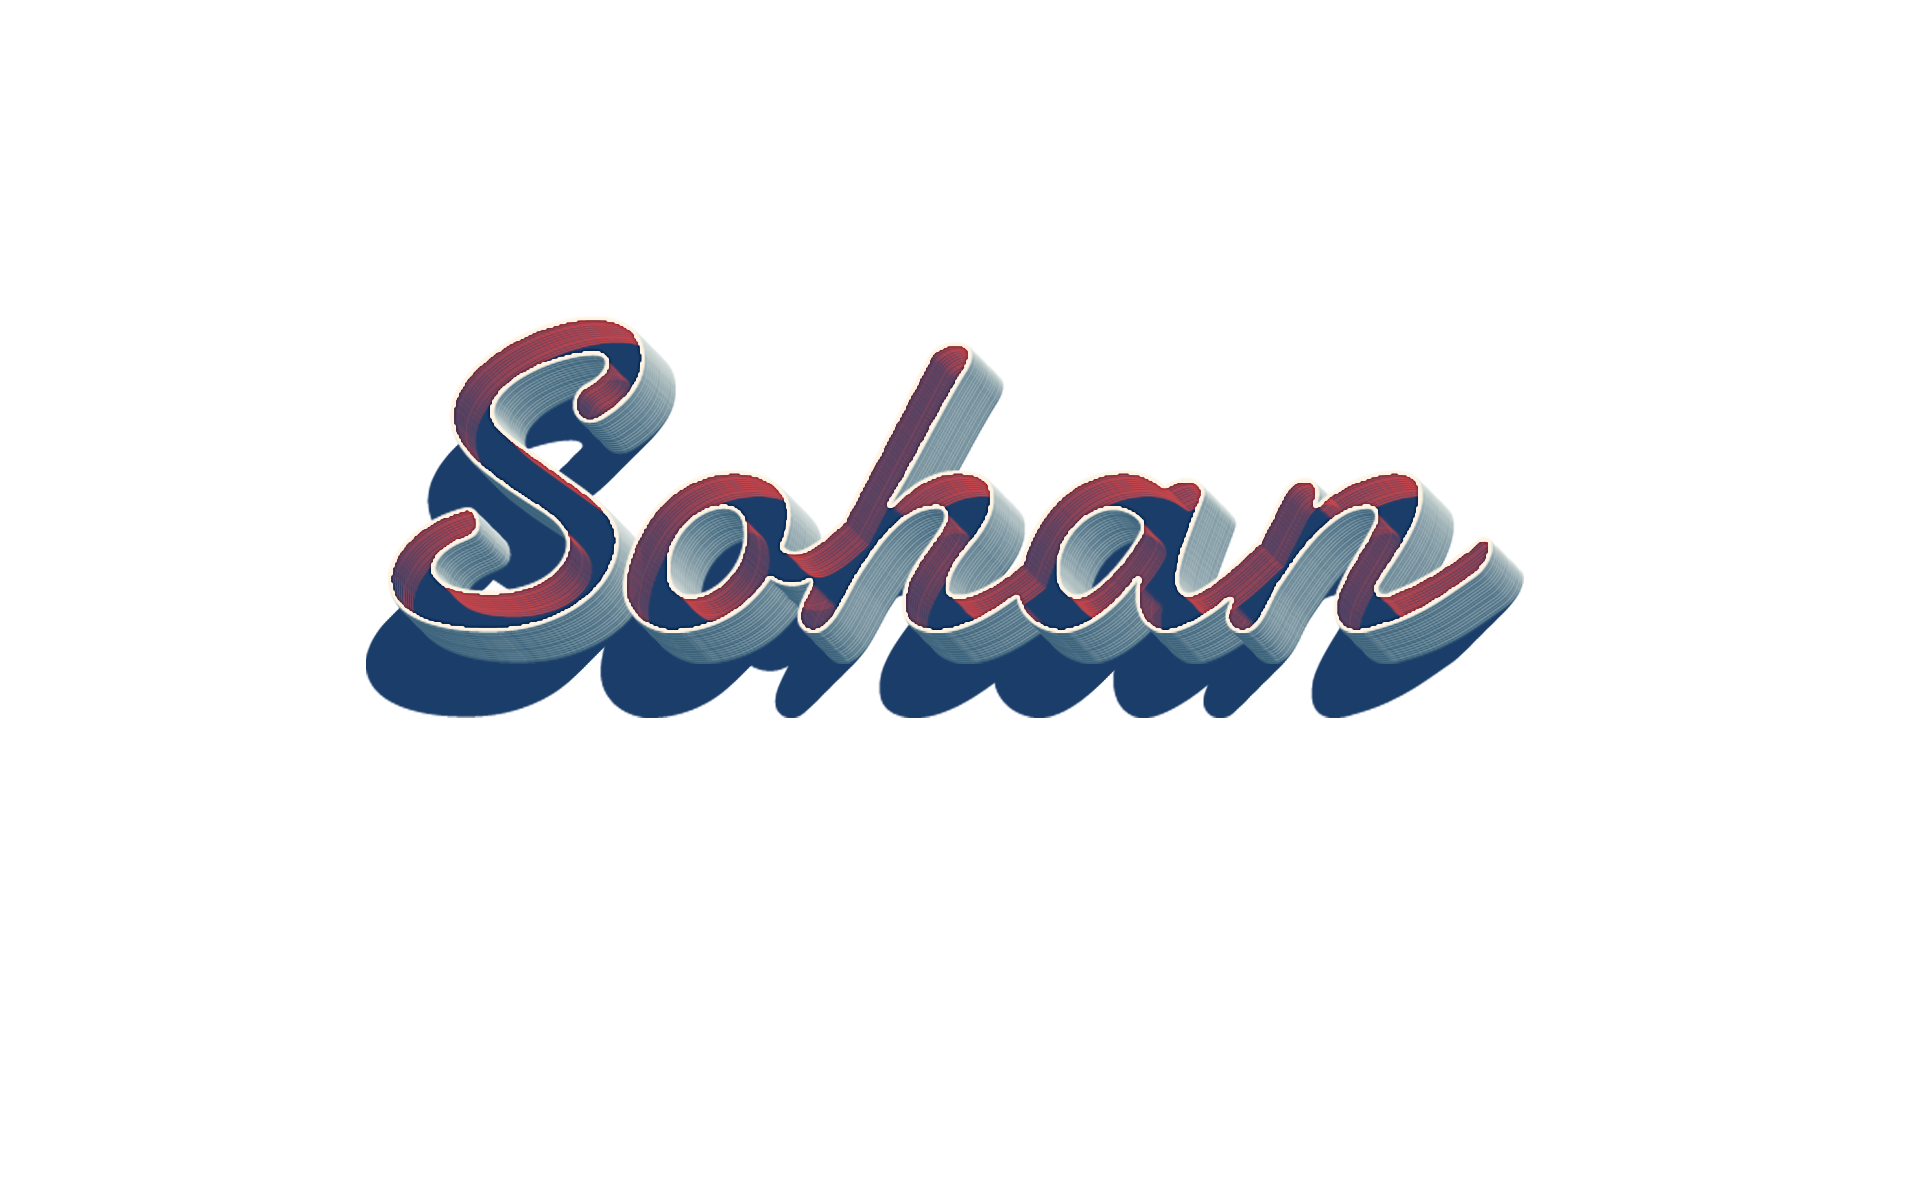 Sohan Letter - HD Wallpaper 